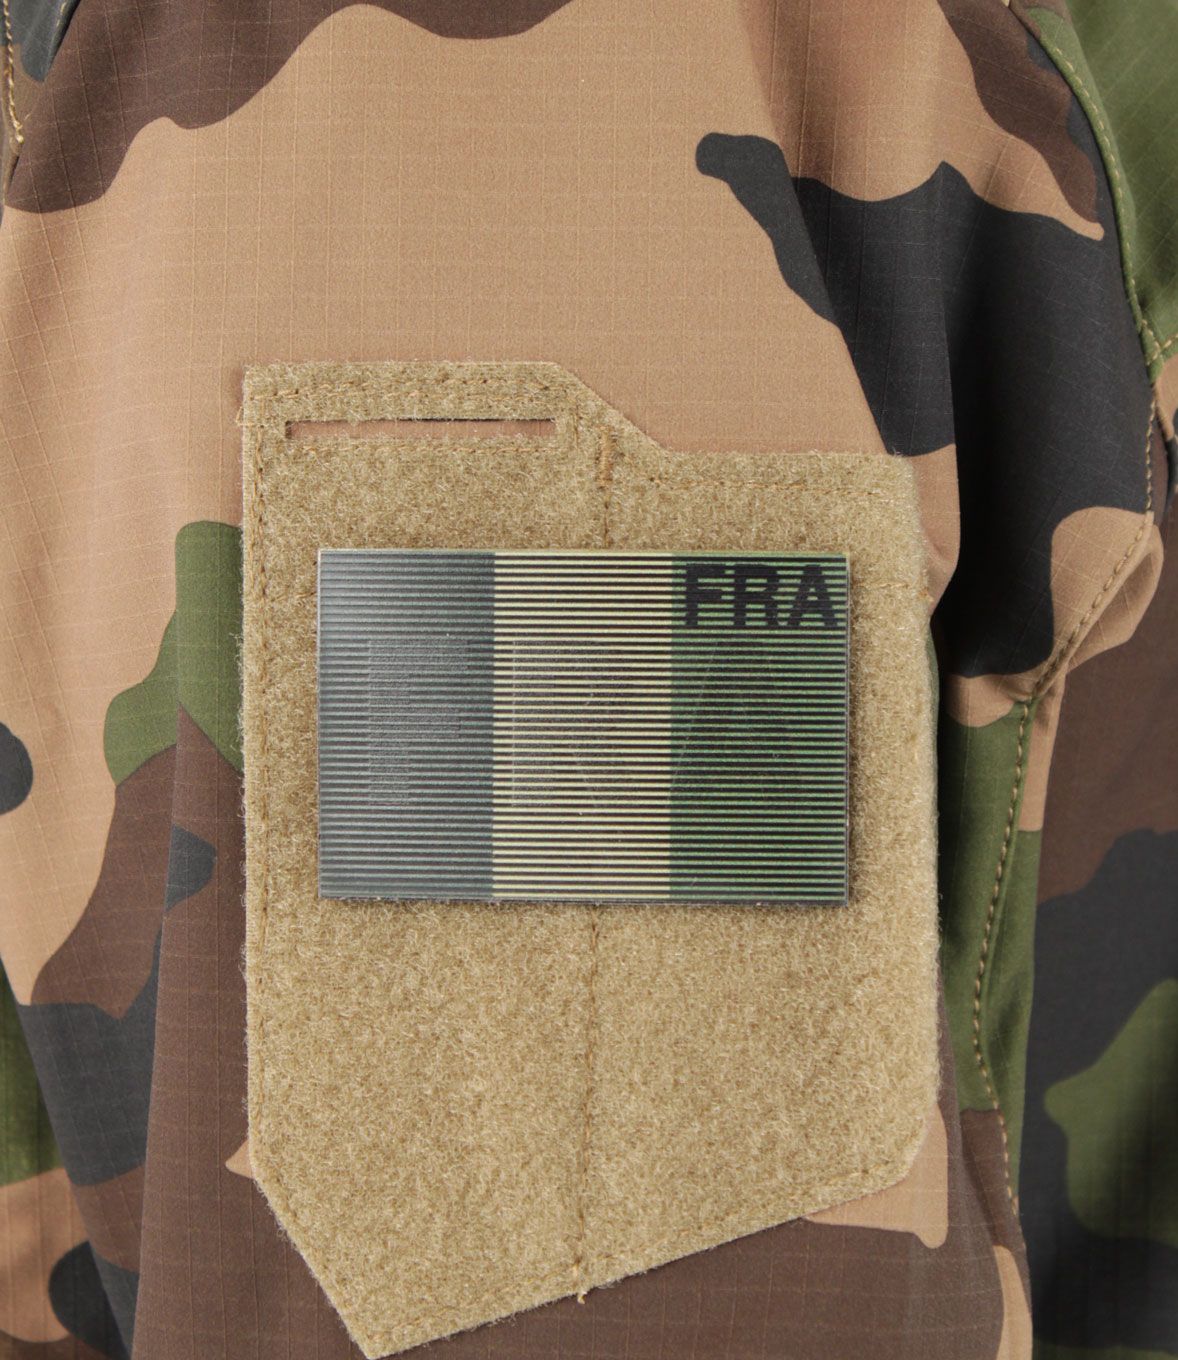 Patch velcro drapeau Français